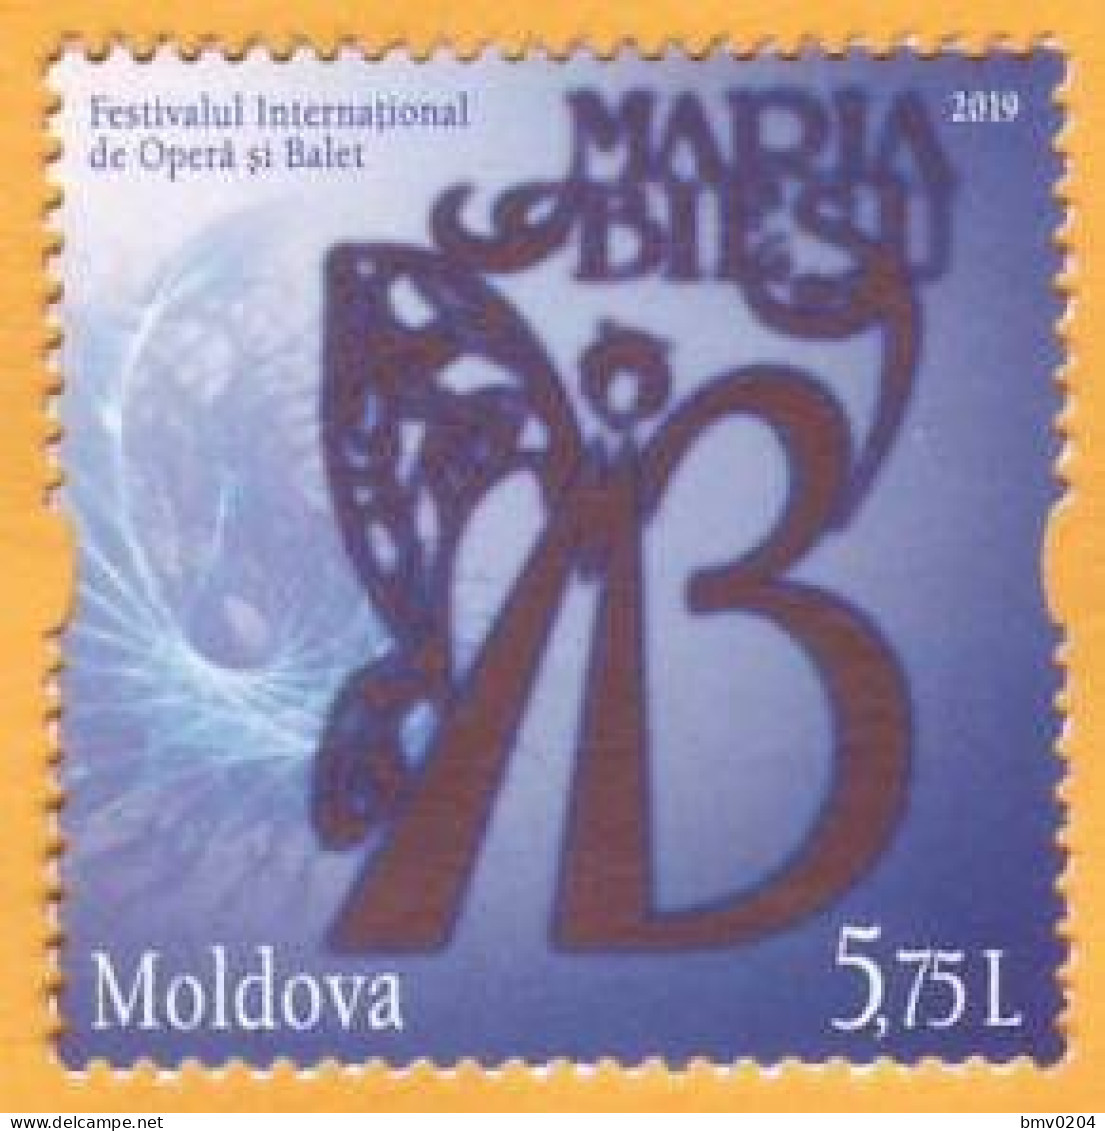 2019 Moldova Moldavie  International Festival. Maria Biesu. Opera. Ballet. Singer. Artist. Art 1v Mint - Théâtre